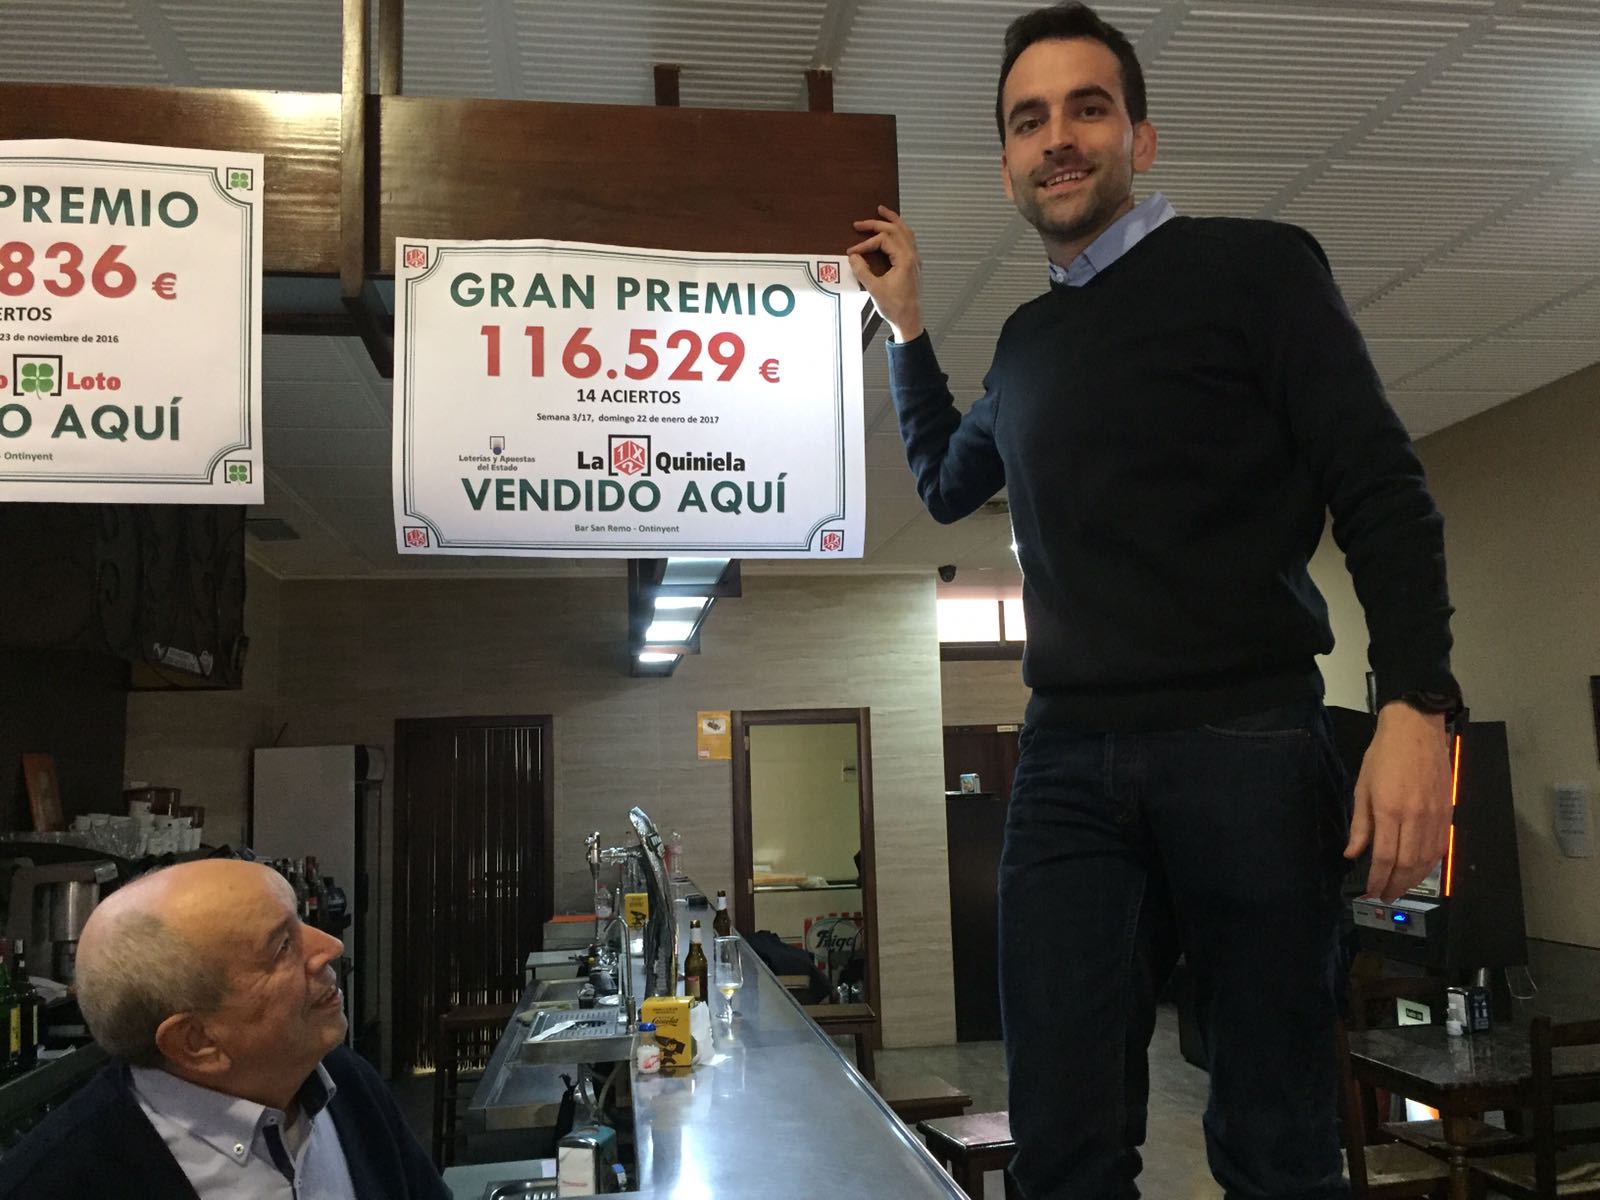 Propietarios del Bar San Remo de Ontinyent muestran el cartel con el premio de la Quiniela